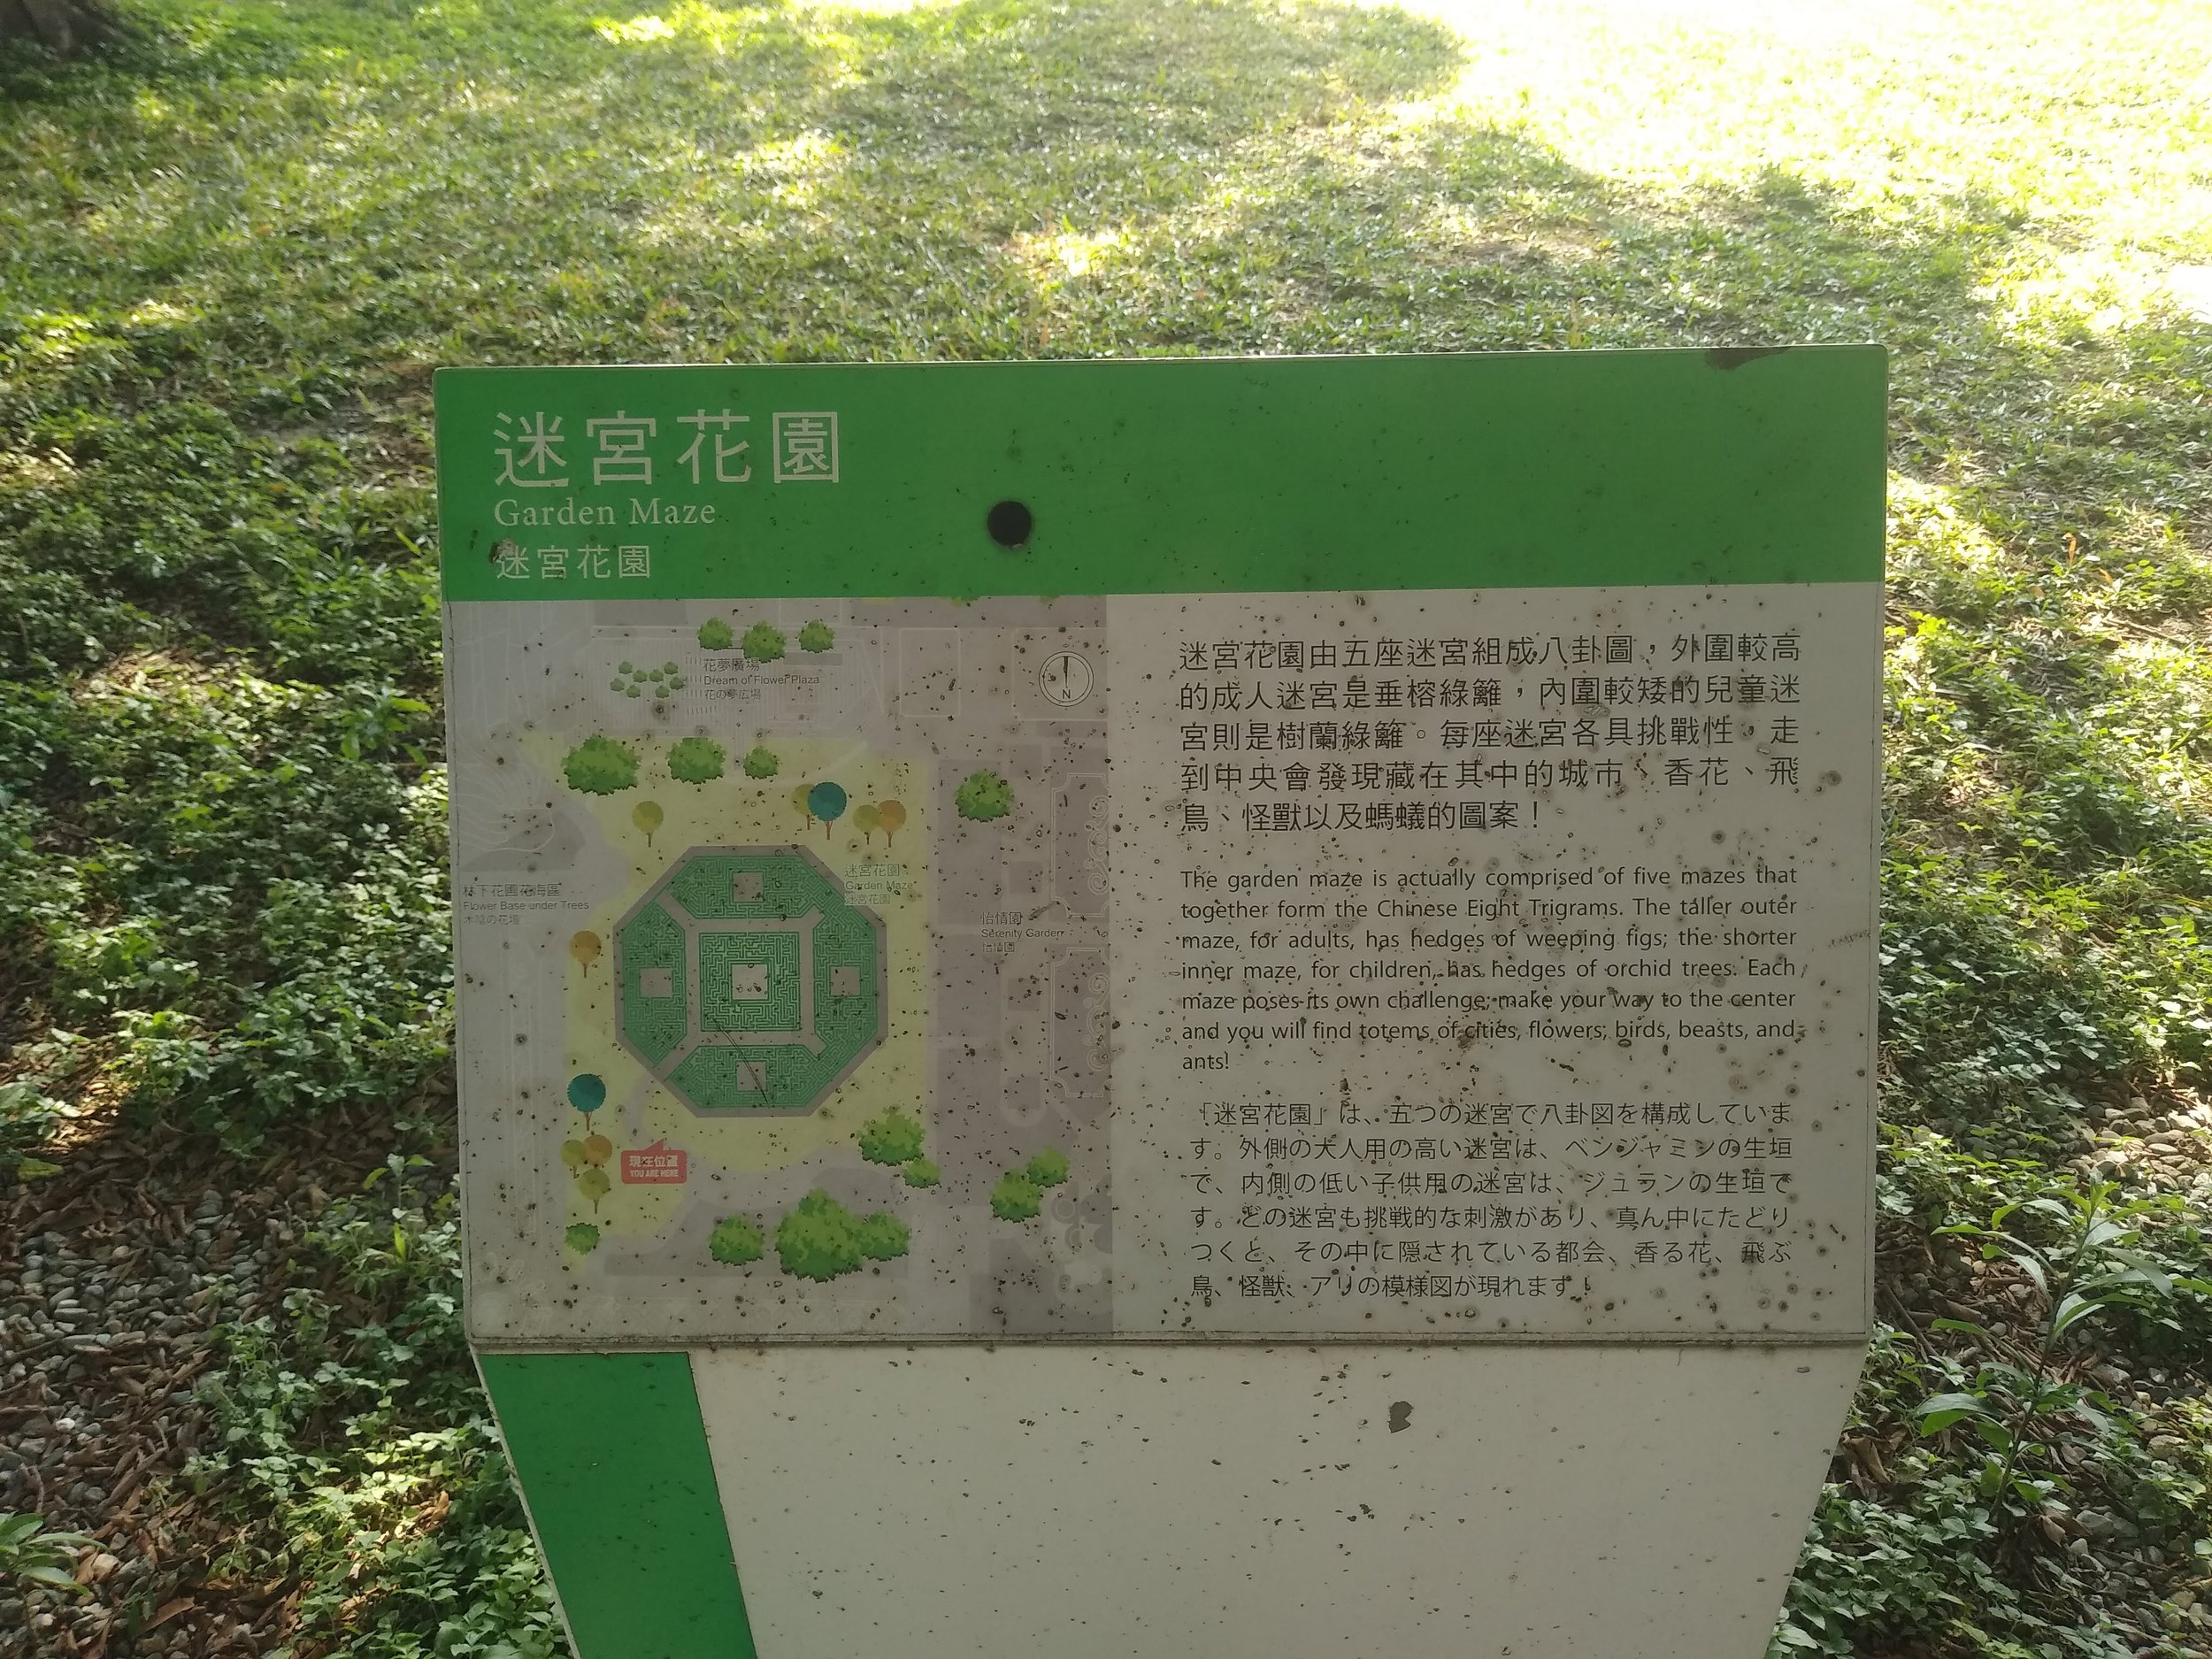 Maze Garden Information Sign